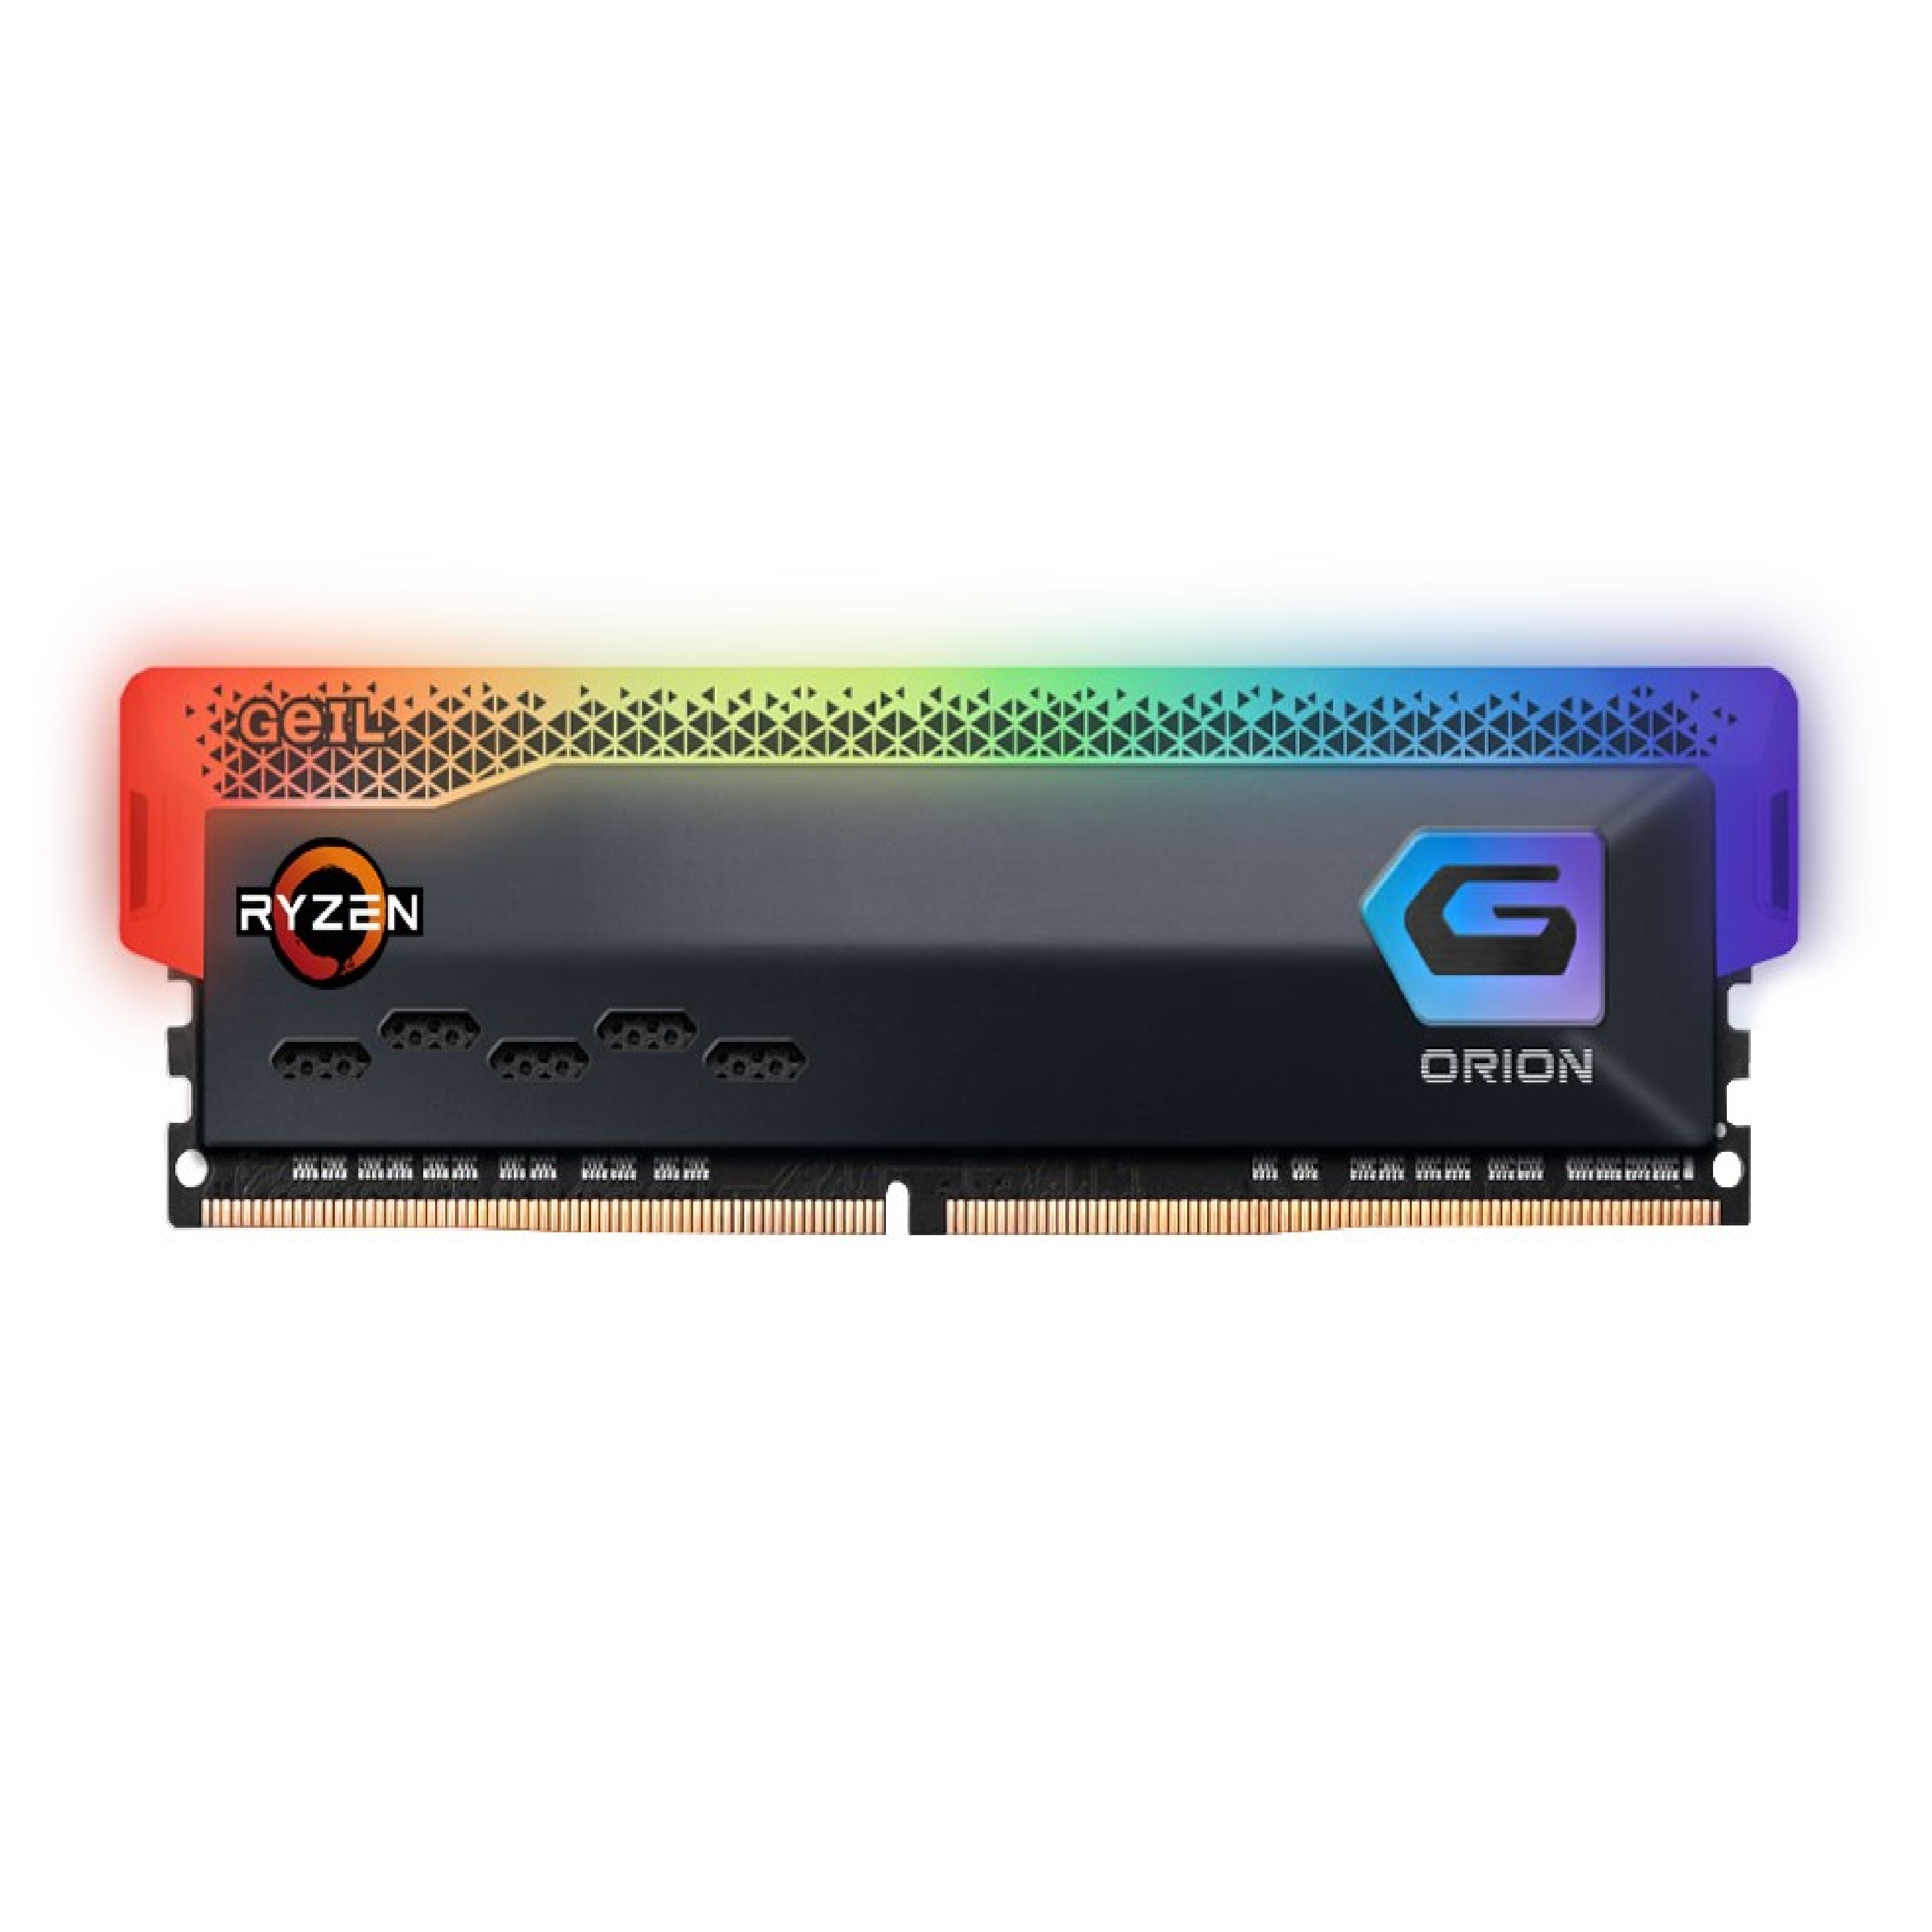 GeiL Orion RGB 8GB AMD Edition 3200Mhz - Black - Store 974 | ستور ٩٧٤